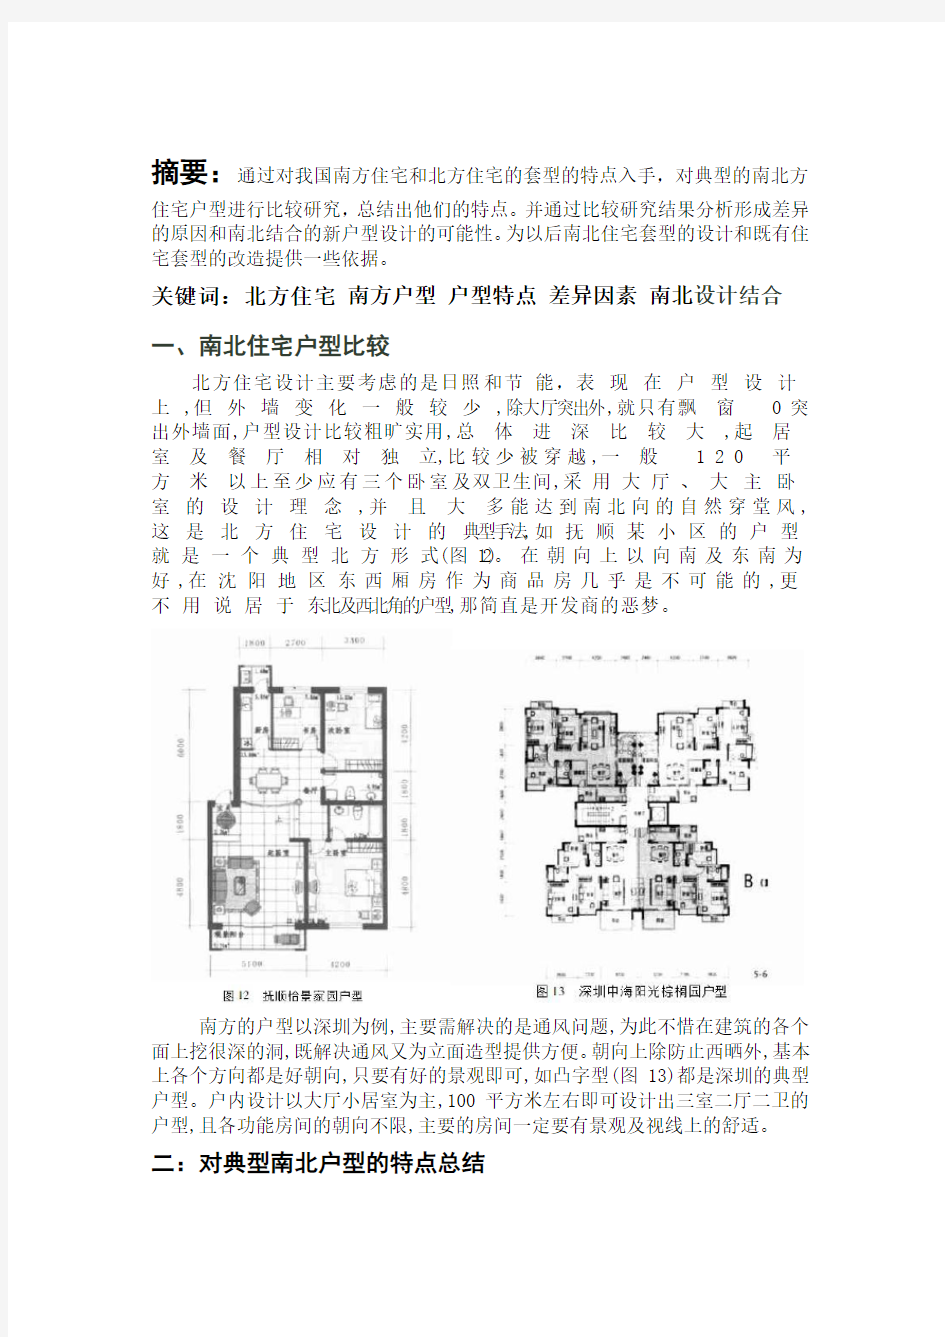 于广岩-3012206053-建筑学2班-对南北方住宅套型的比较研究